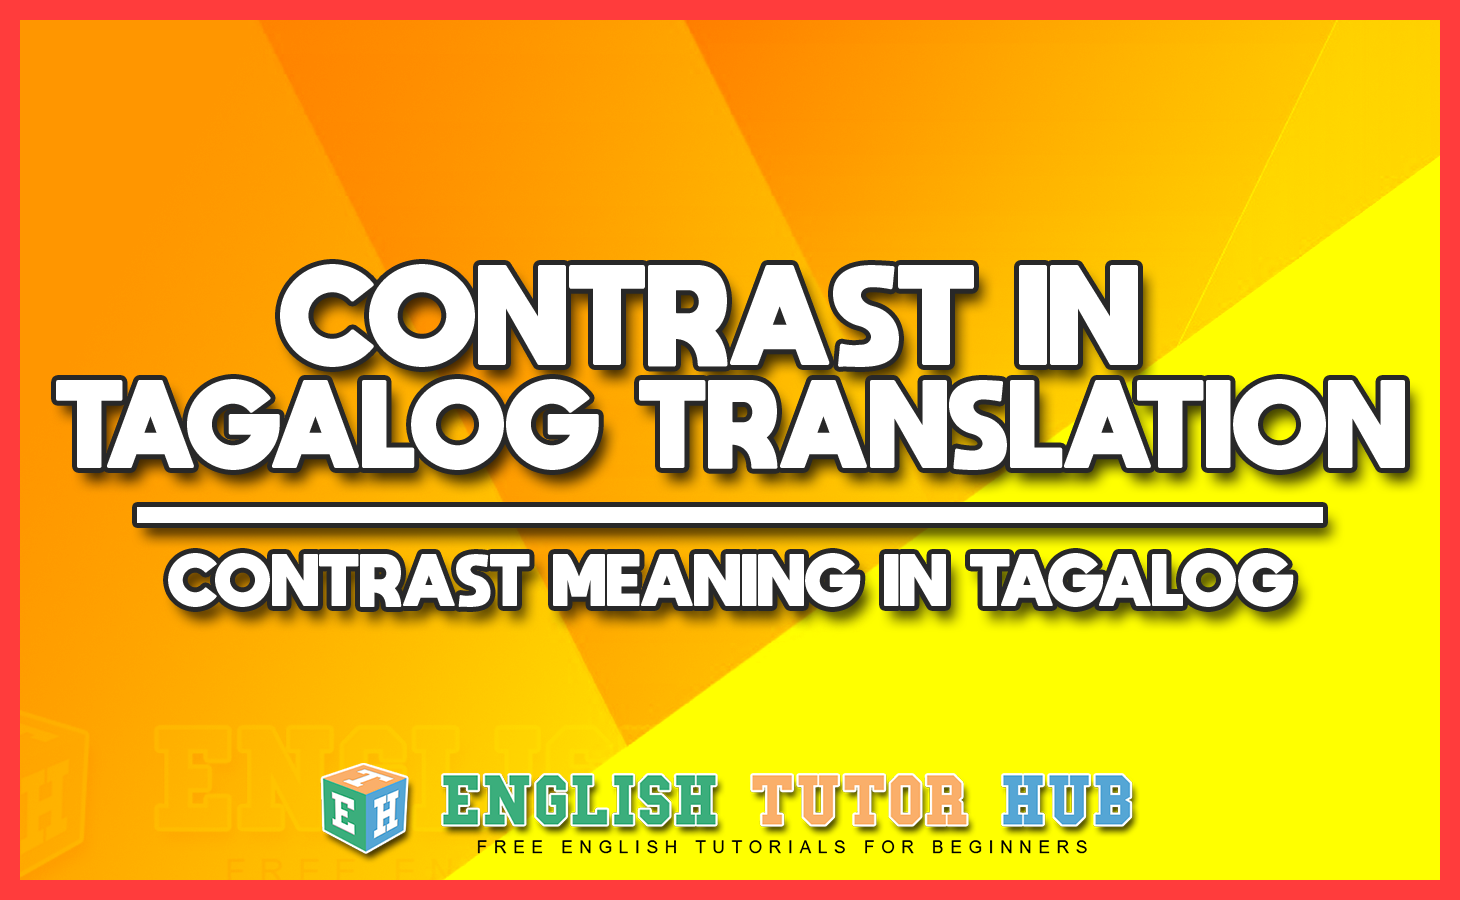 CONTRAST IN TAGALOG TRANSLATION